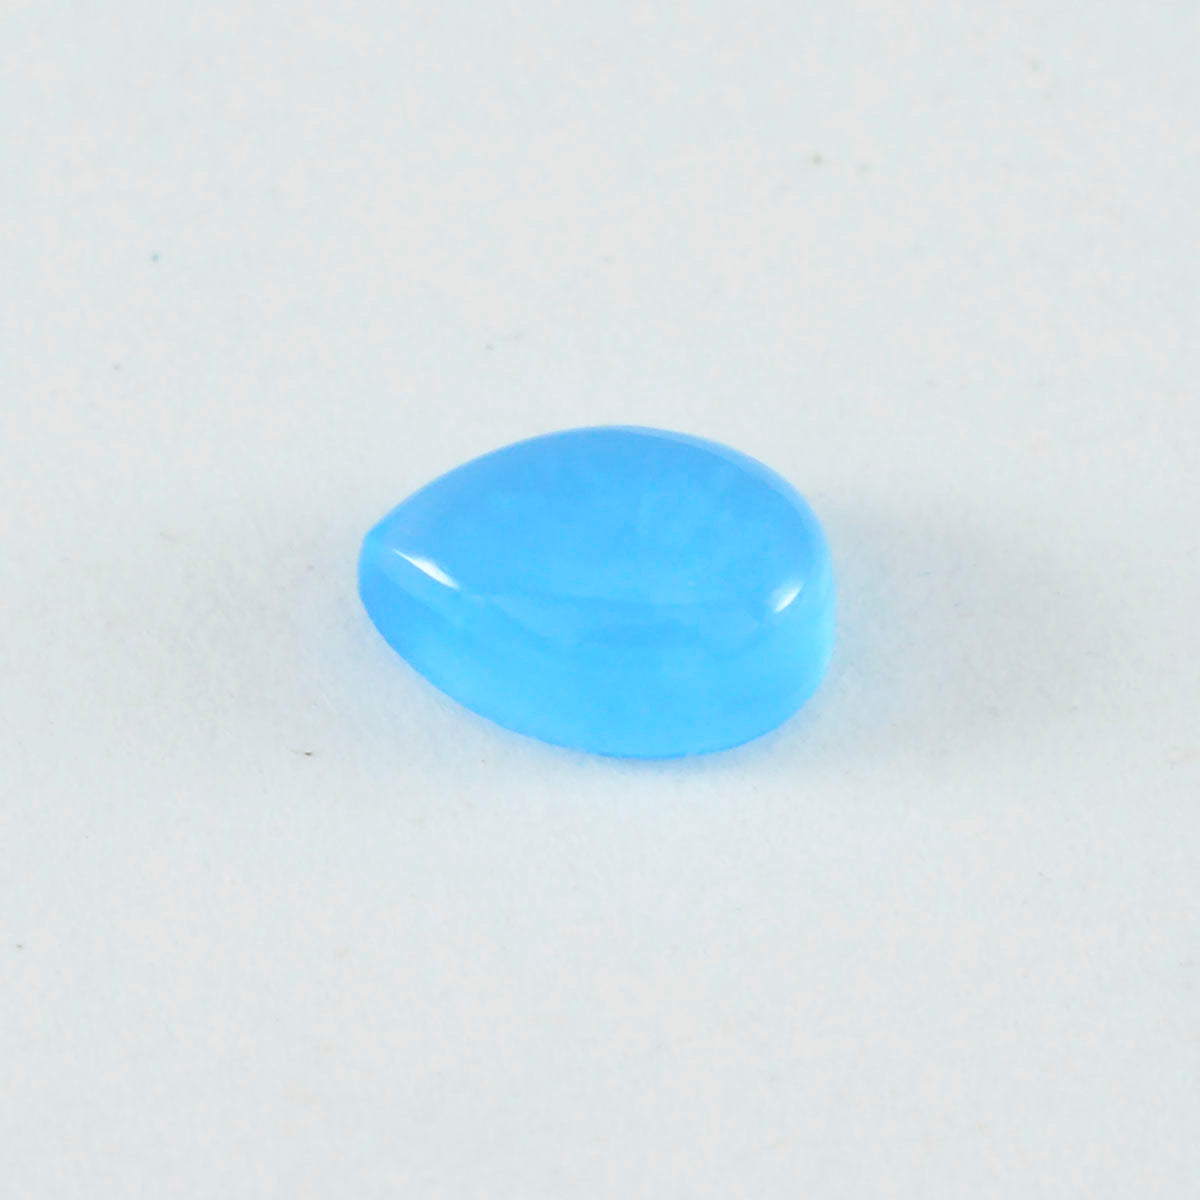 riyogems 1шт кабошон из синего халцедона 12x16 мм грушевидной формы A1 качество драгоценный камень